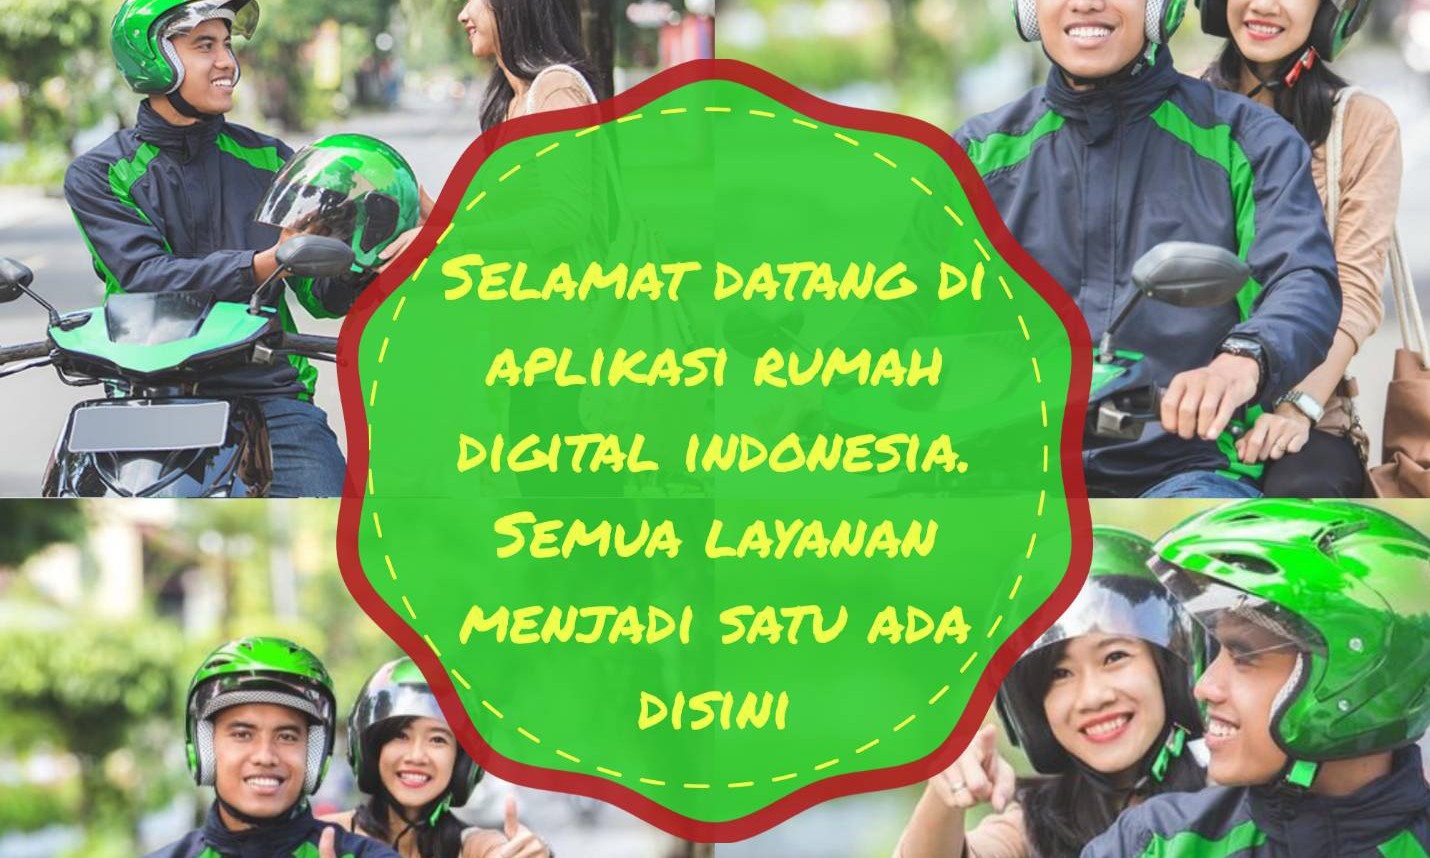 Rumah Digital Indonesia 1